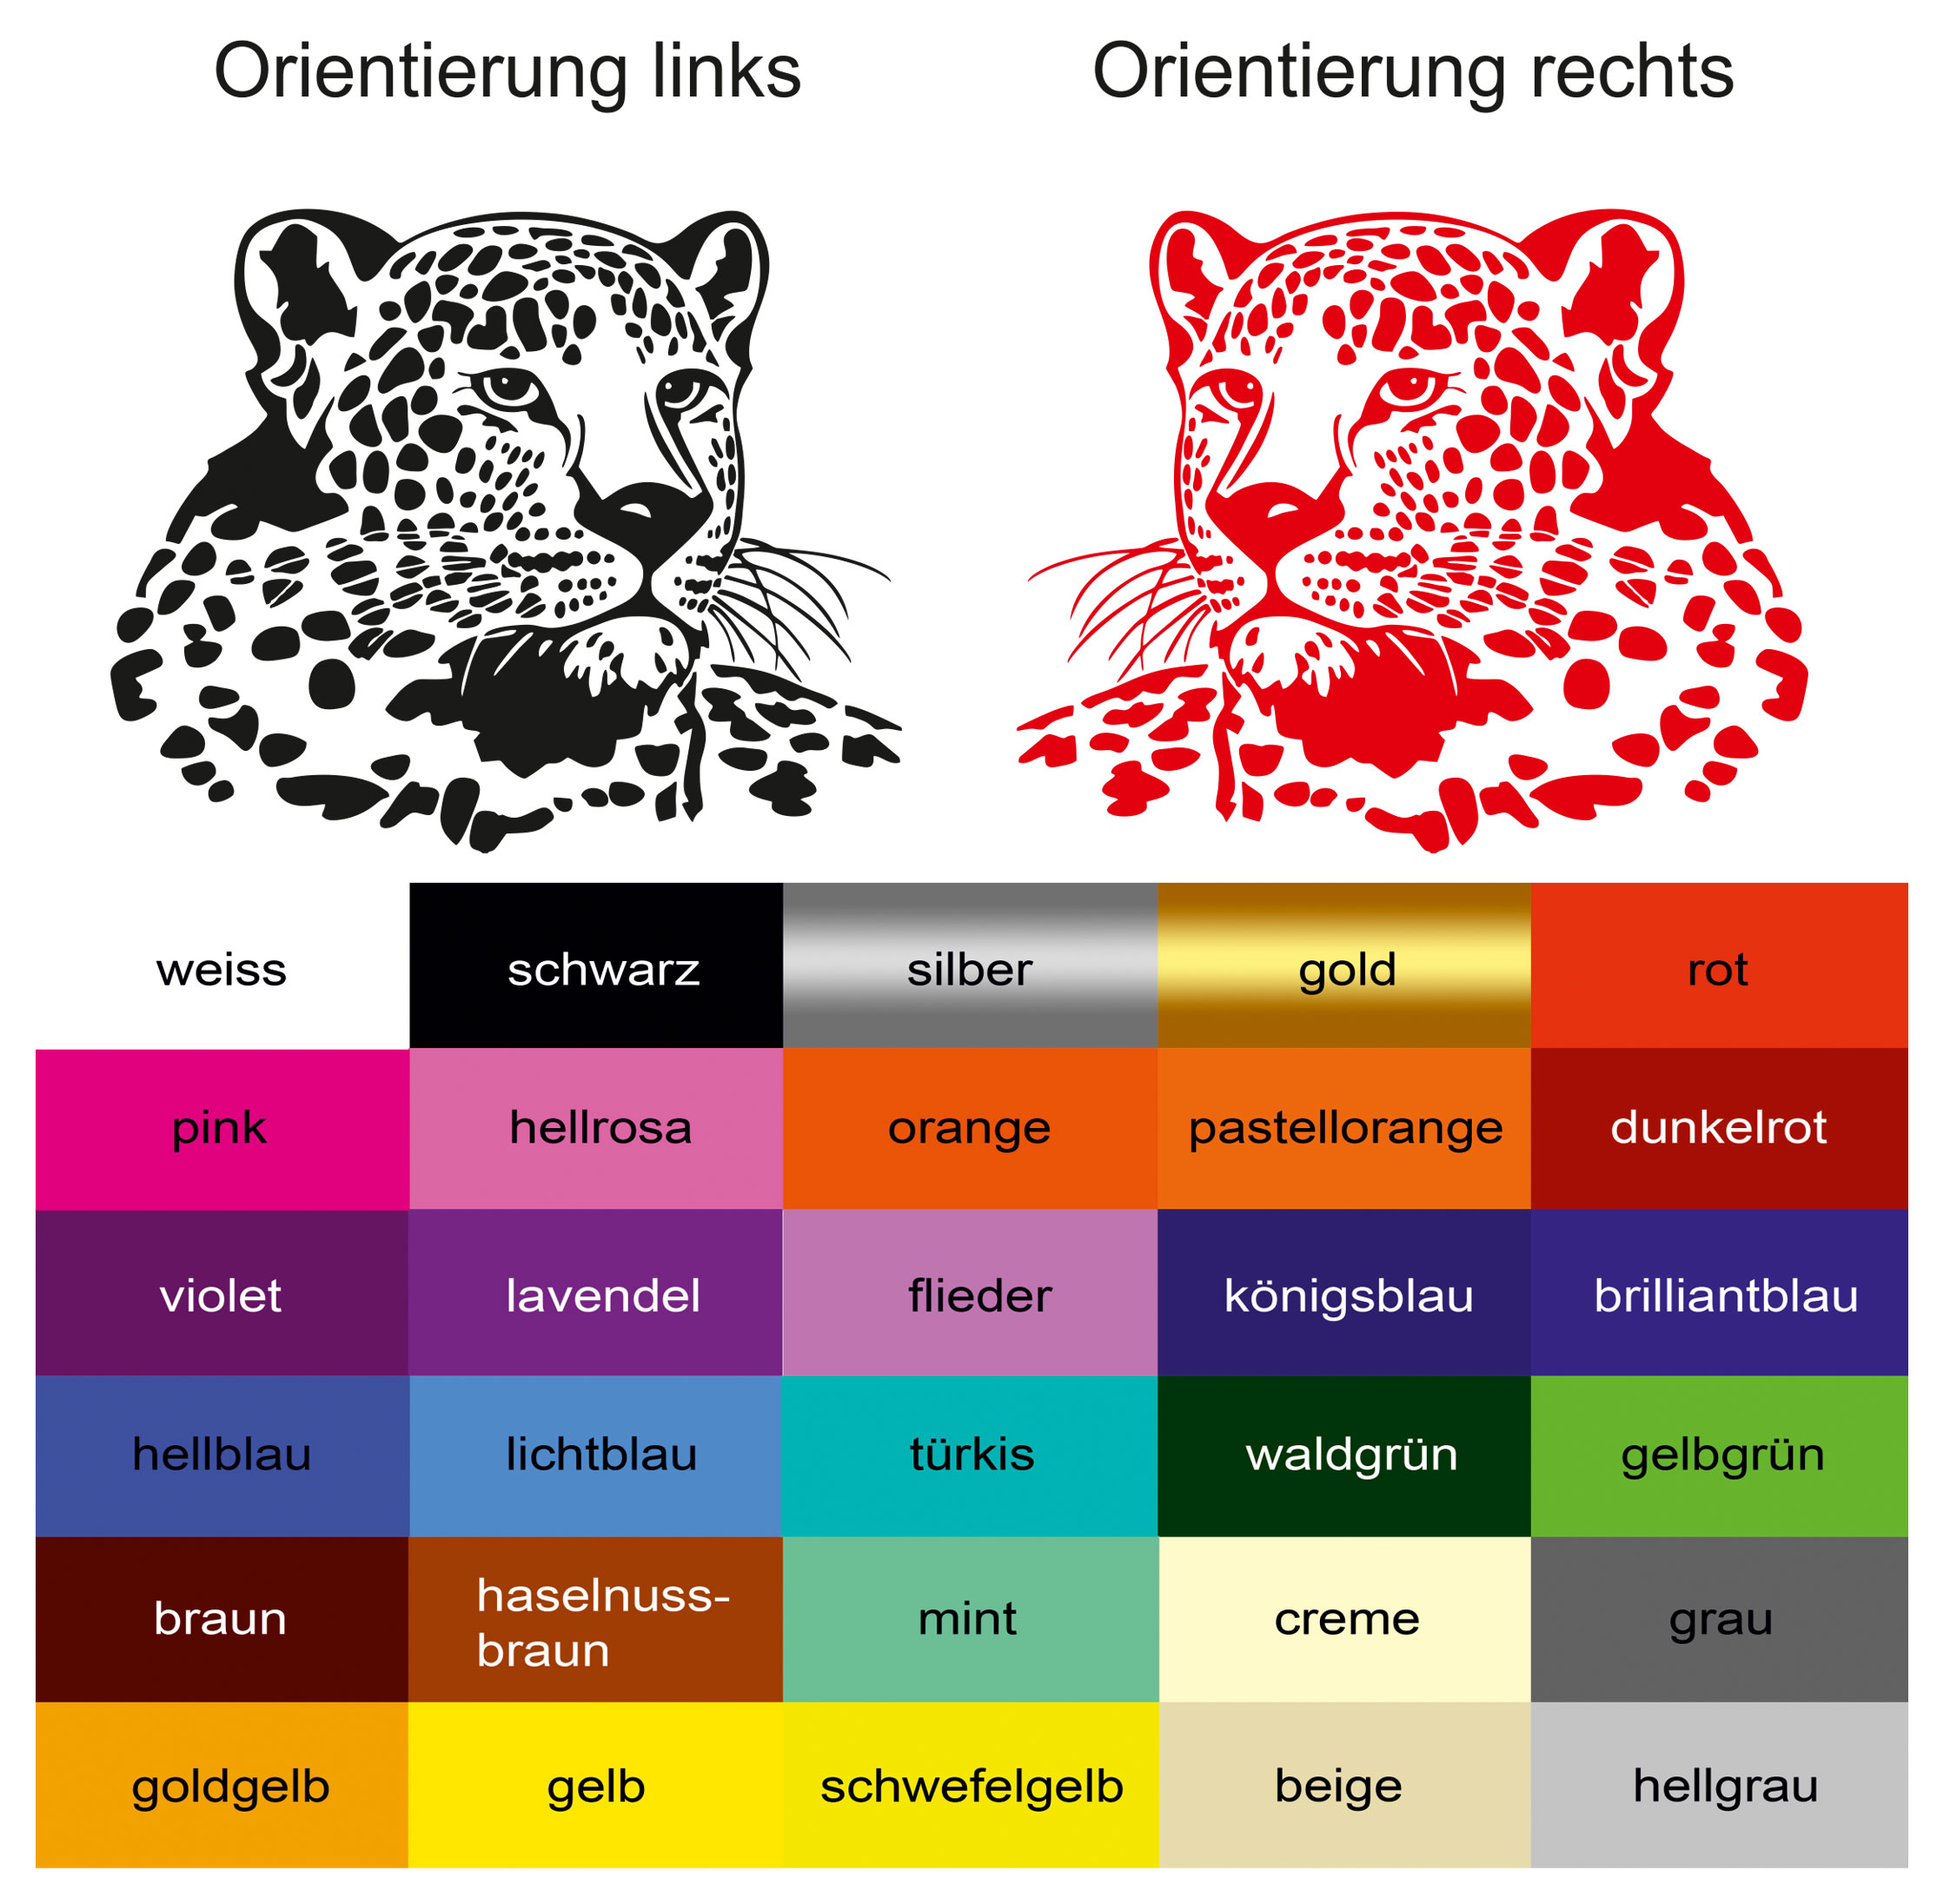 leopard-orientierung